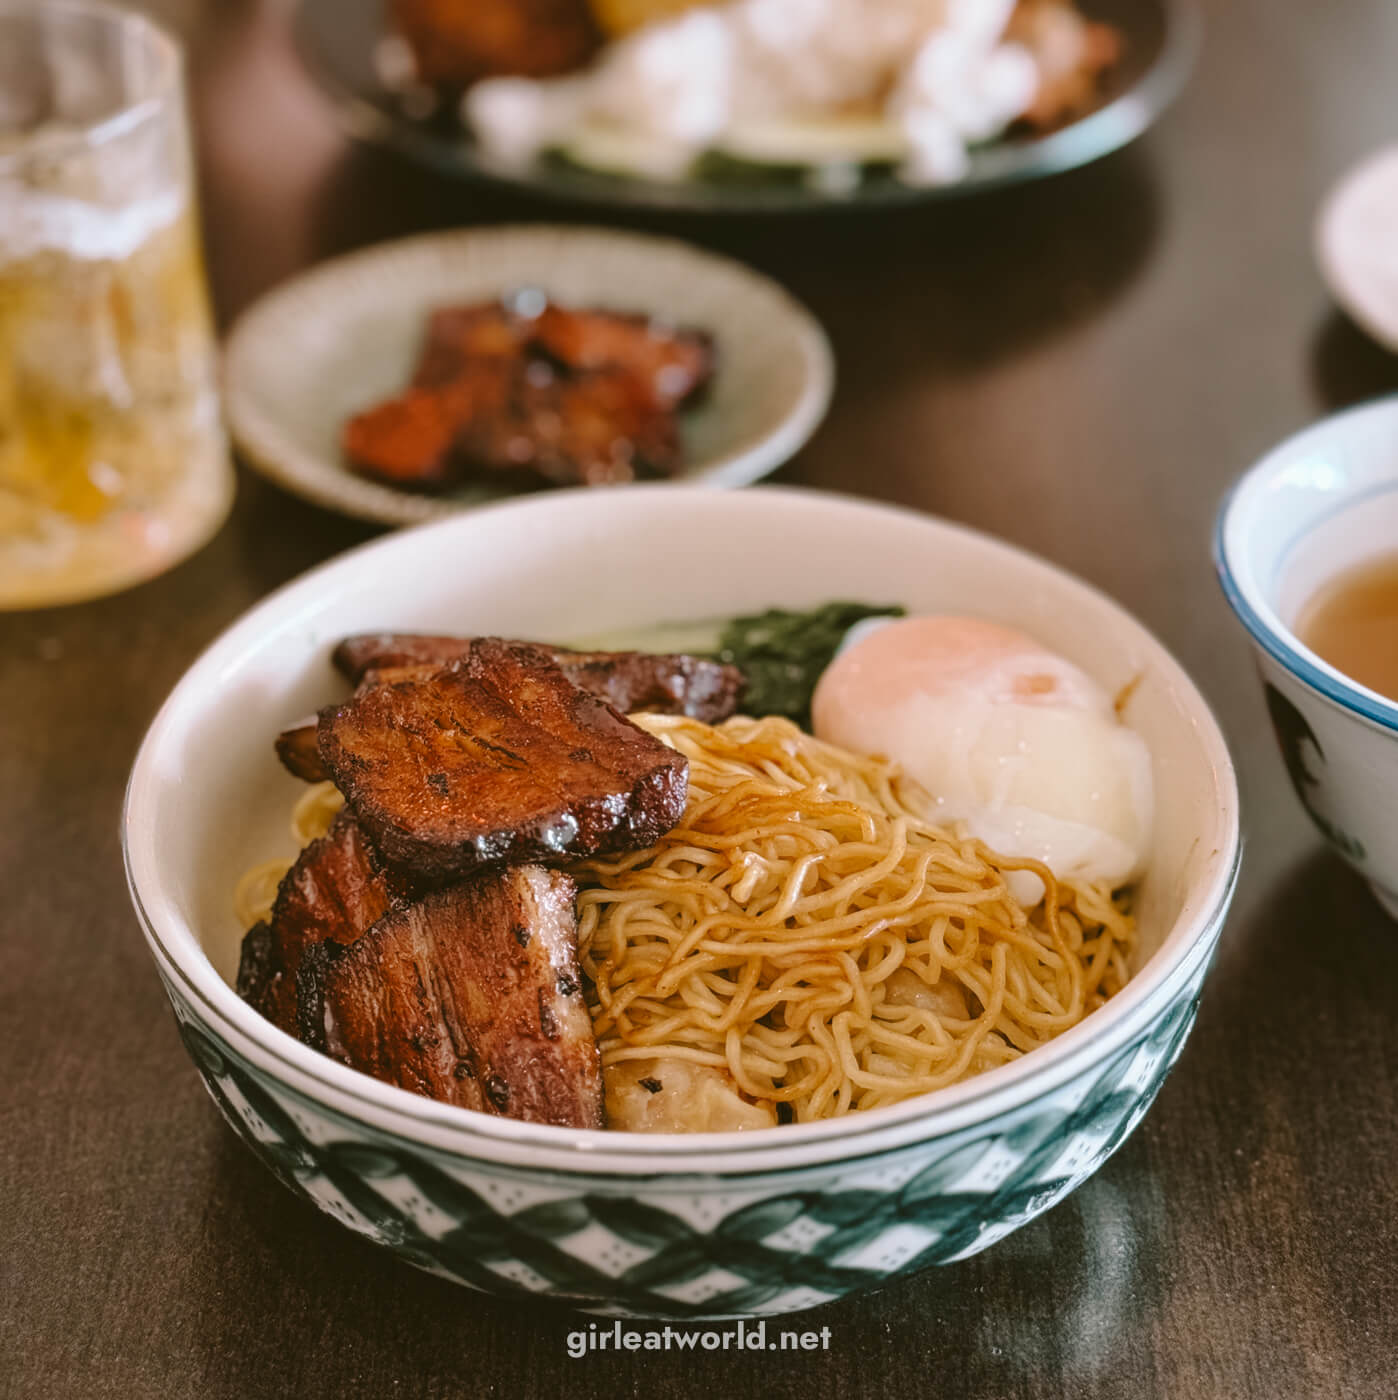 Singapore Food - Wanton Noodles